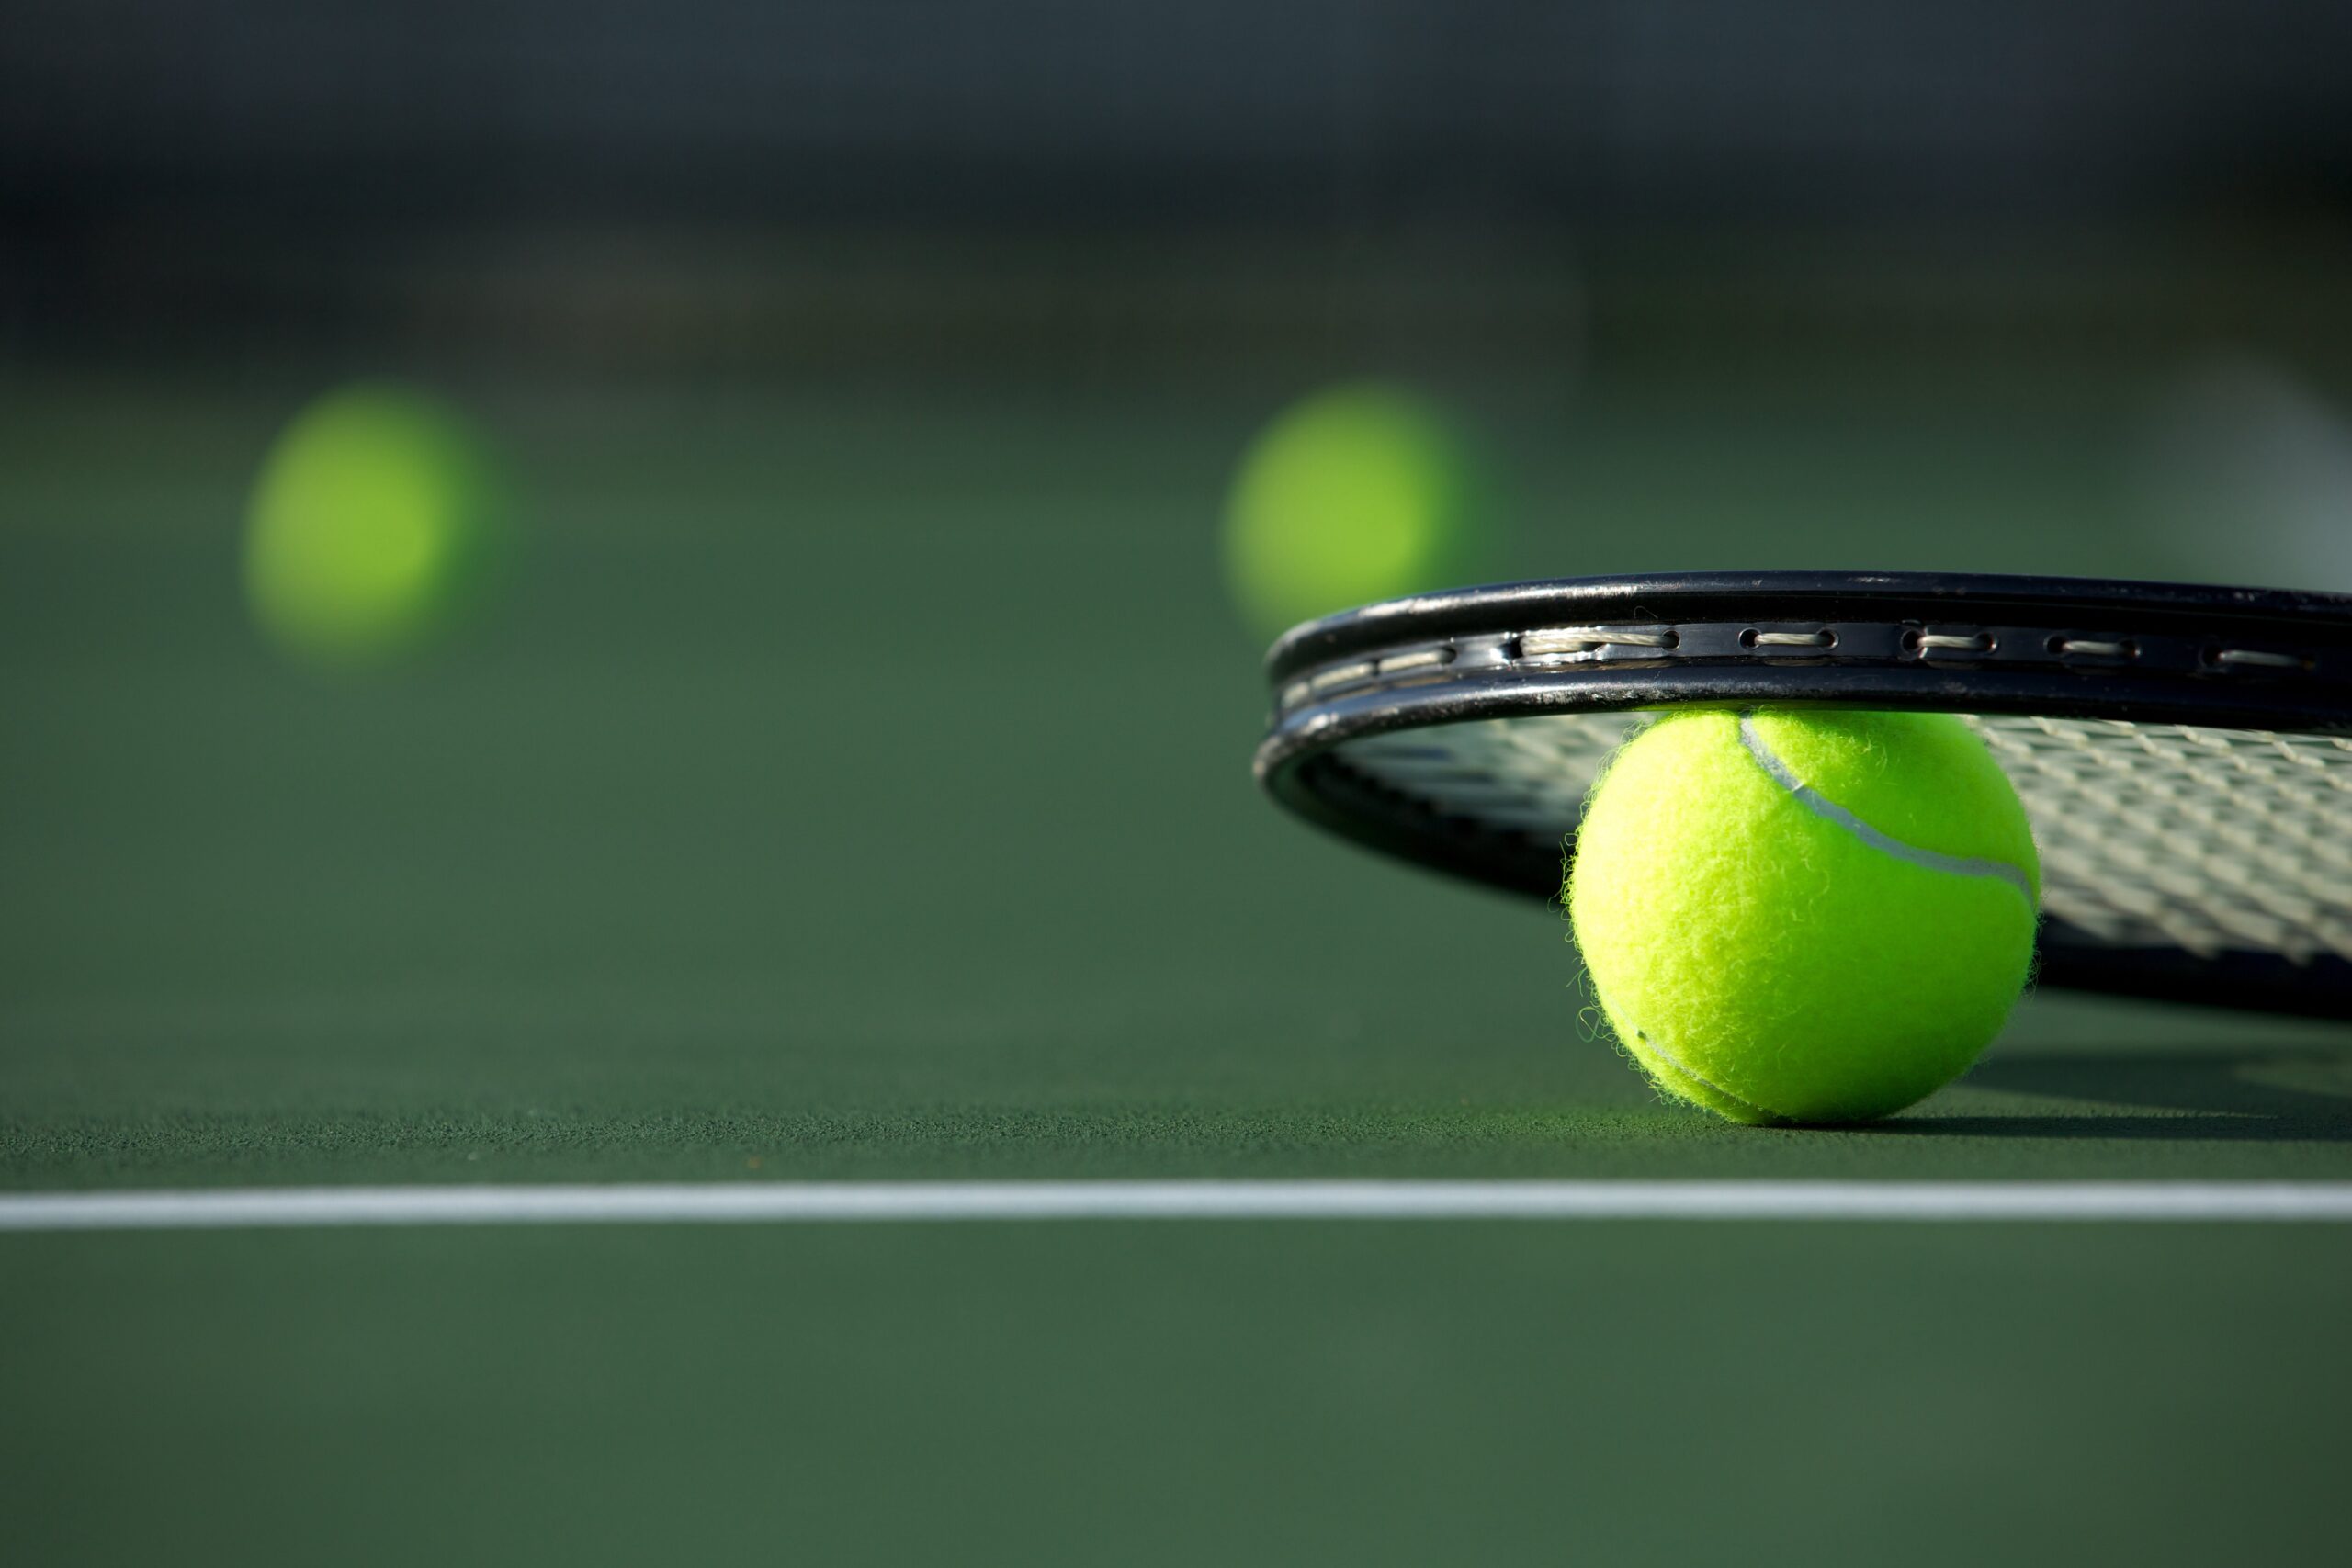 Tennis balls and a tennis racket on a tennis court